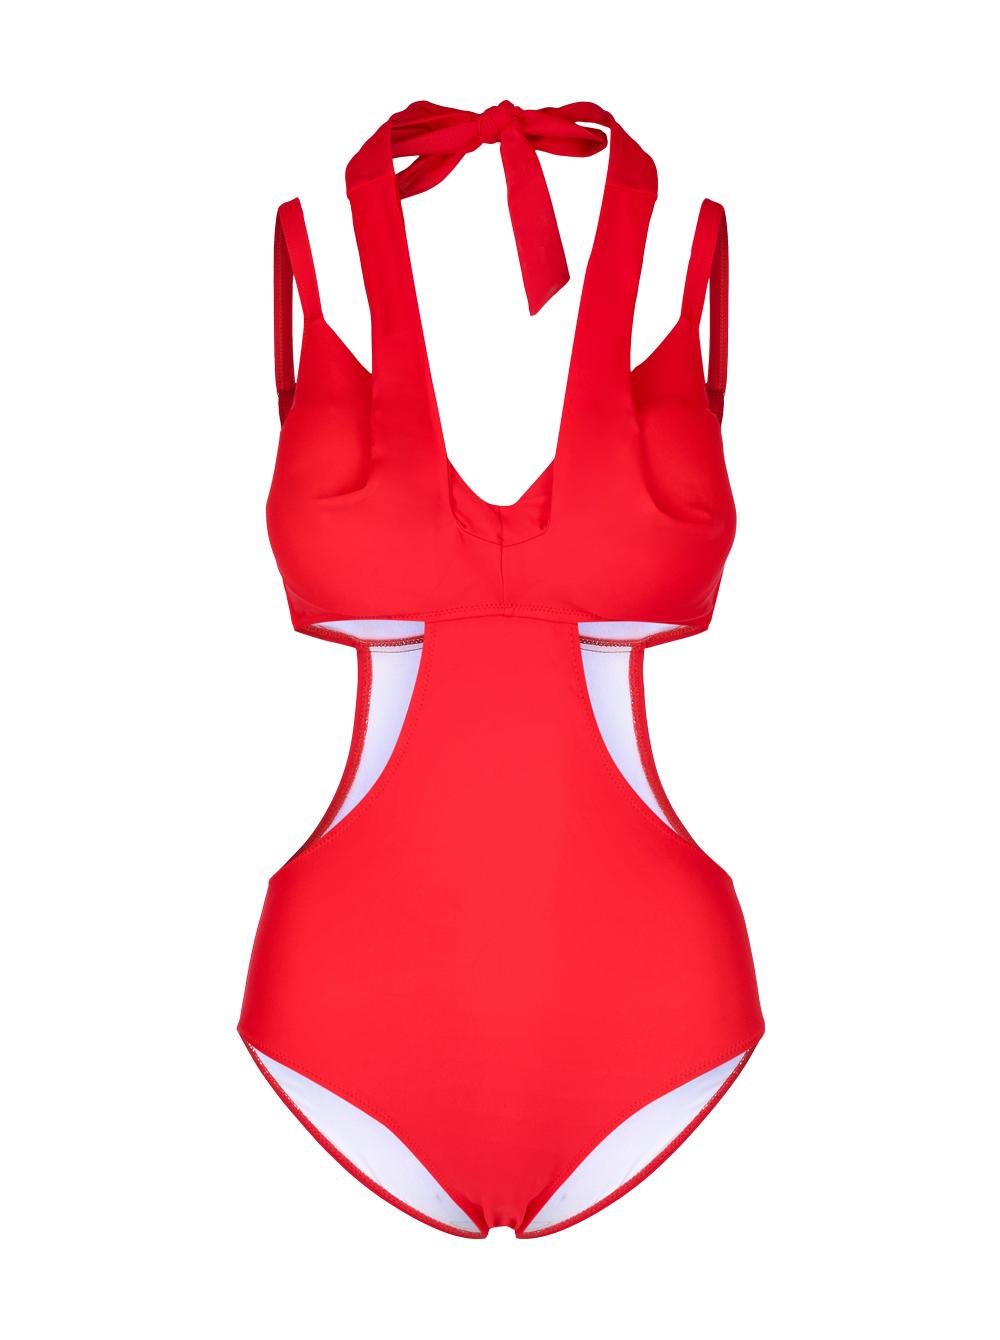 Selected image for CUPSHE Ženski jednodelni kupaći kostim J20 koralni